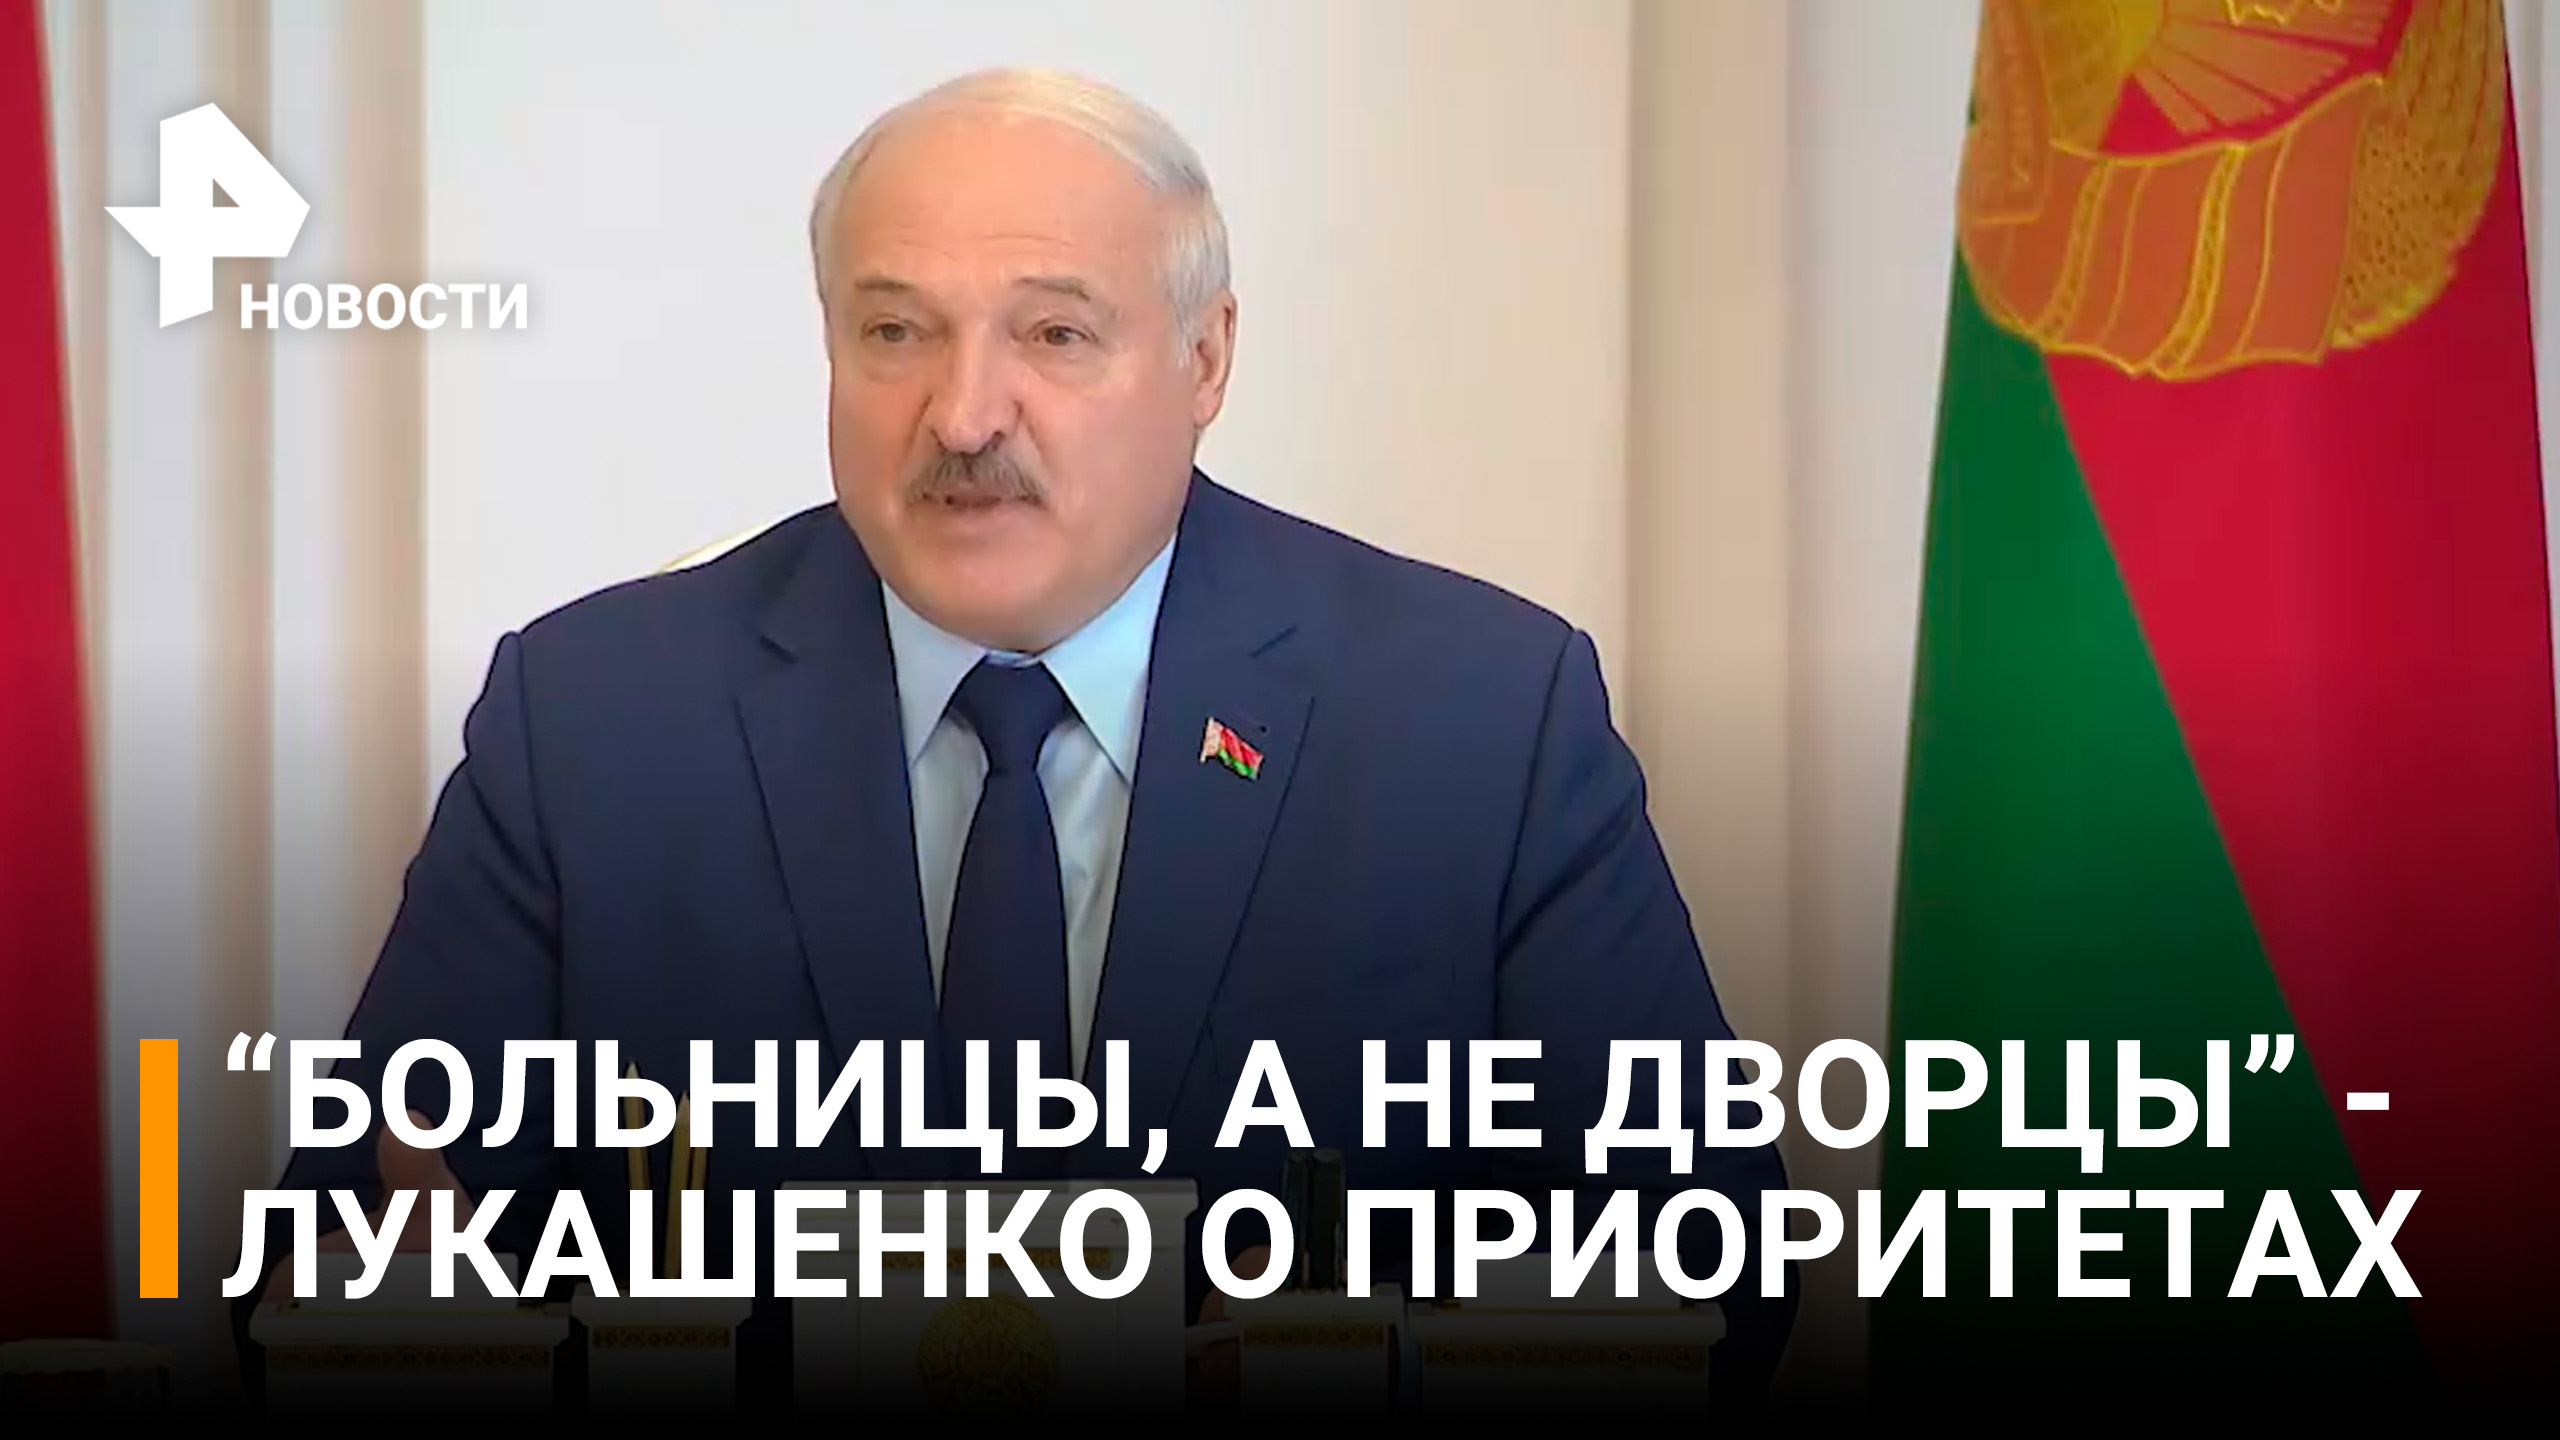 "Надо очухаться": Лукашенко отчитал чиновников за больницы-дворцы и призвал экономить / РЕН Новости